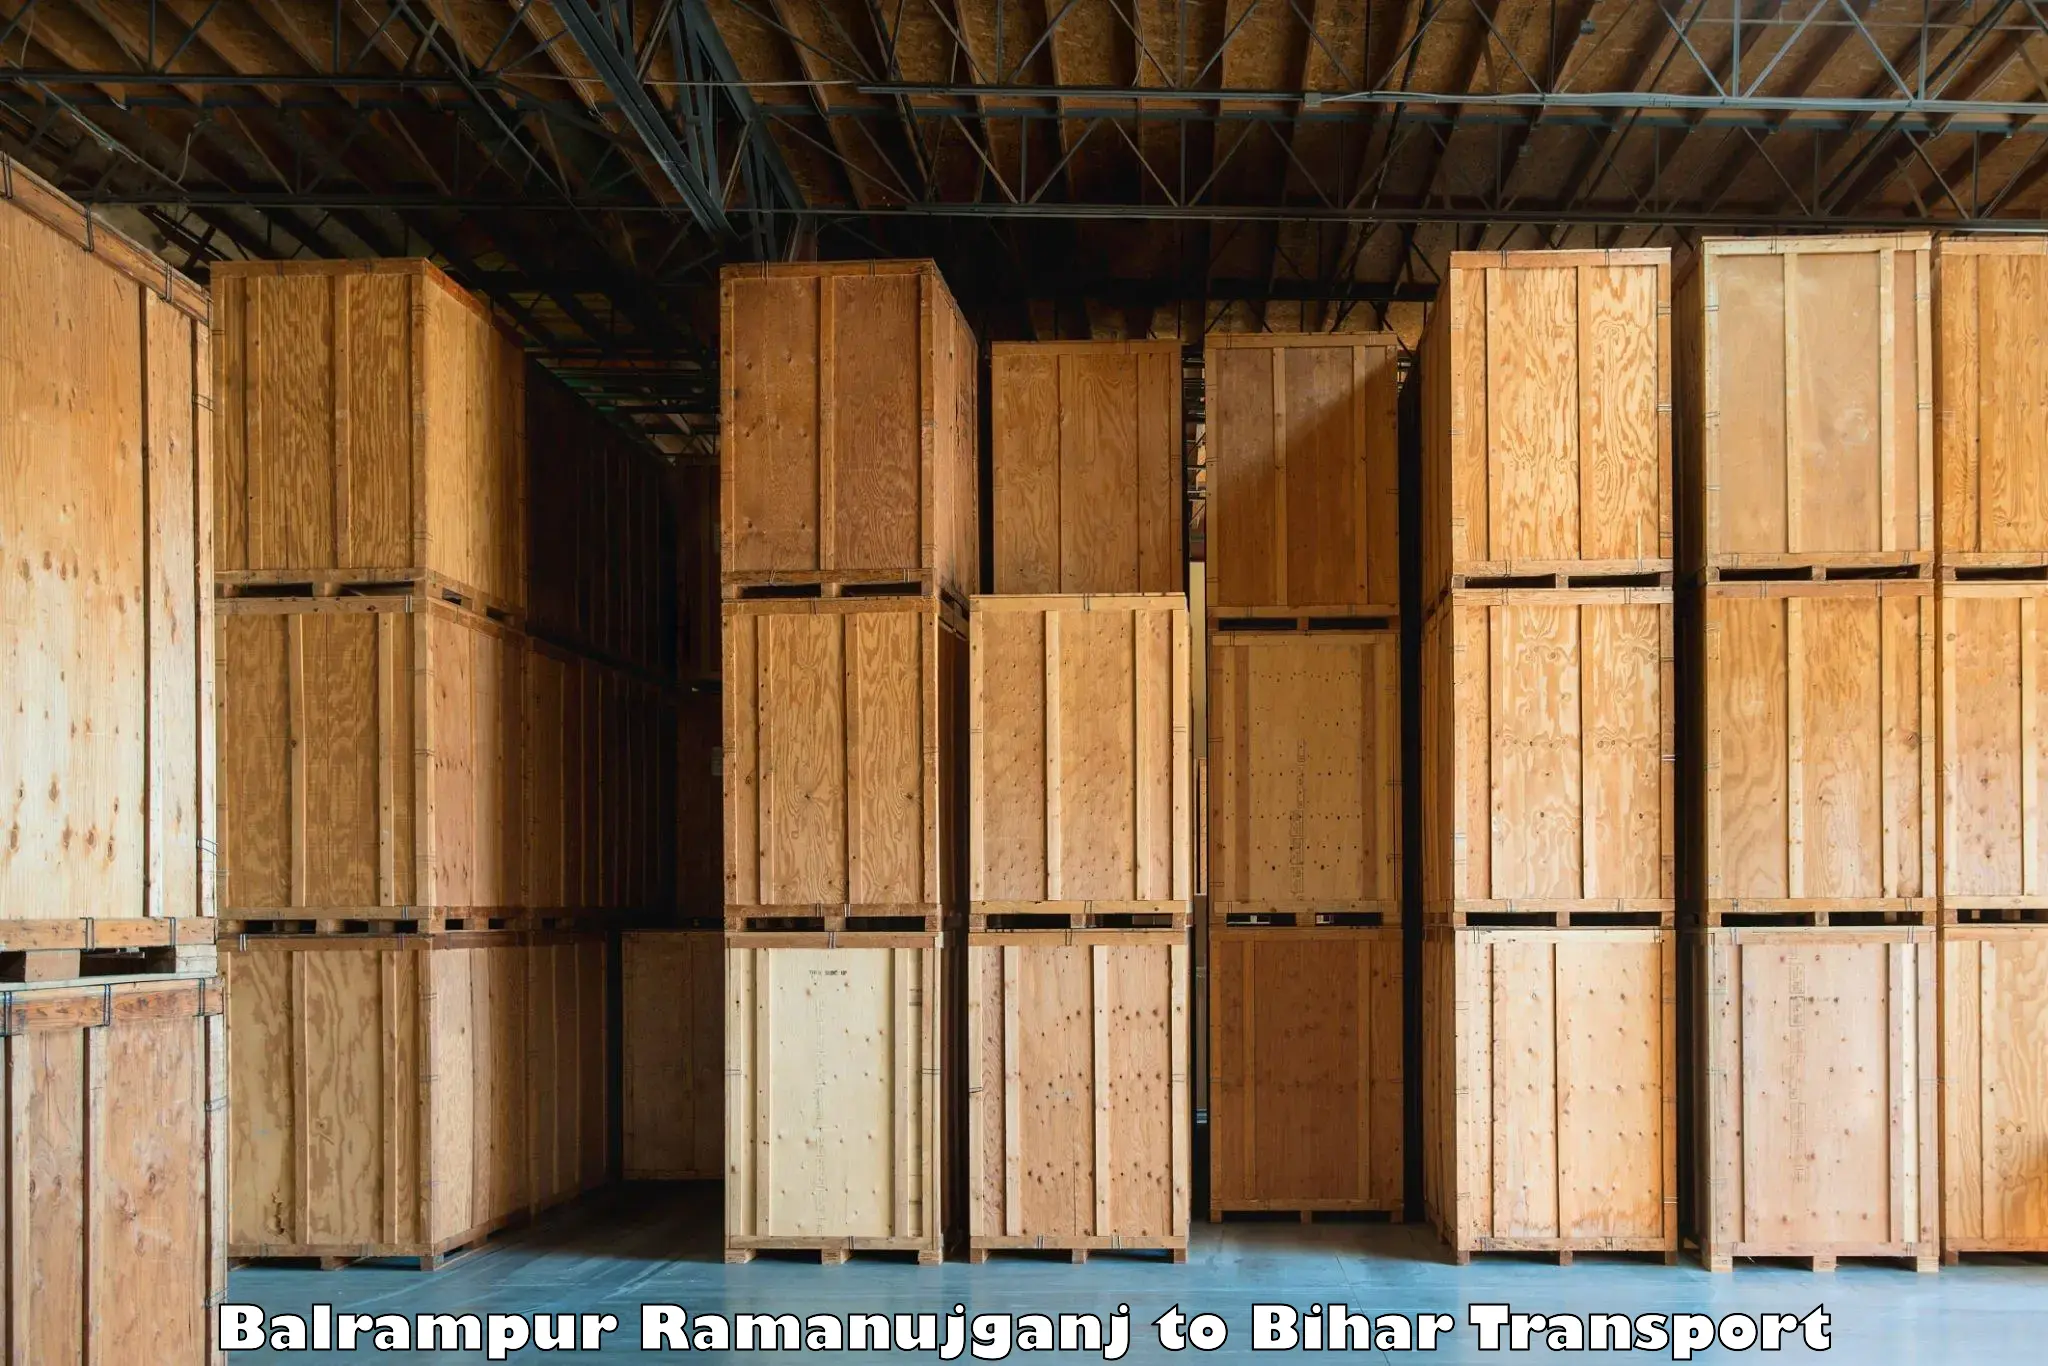 Road transport online services Balrampur Ramanujganj to Bhorey